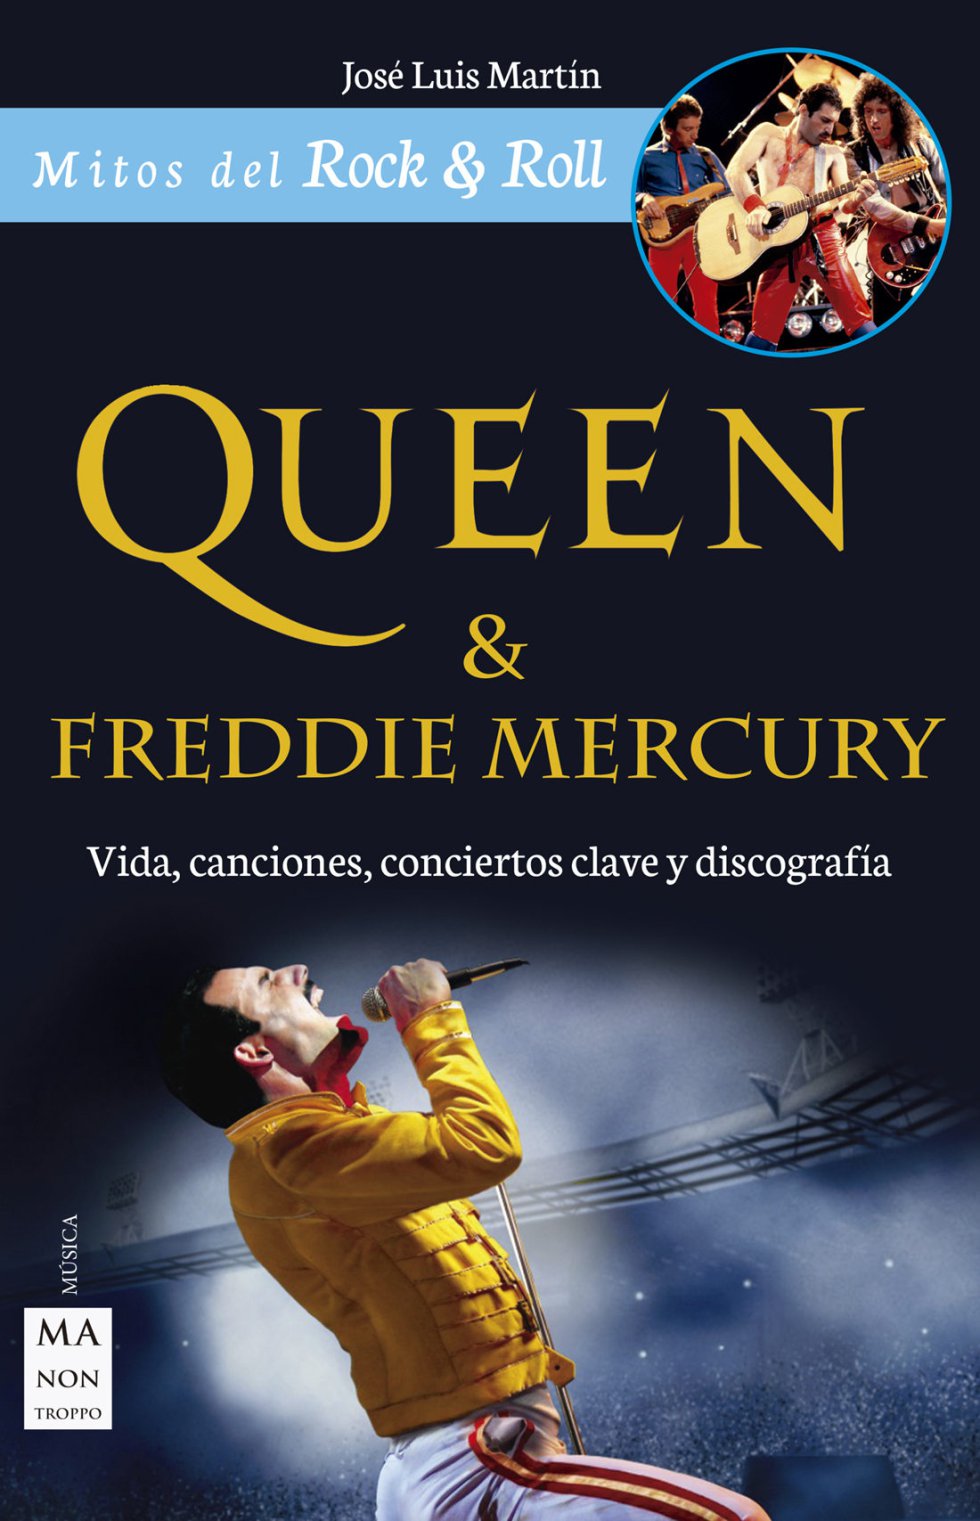 Queen & Freddie Mercury: Vida, canciones, conciertos clave y discografía (José Luis Martín)